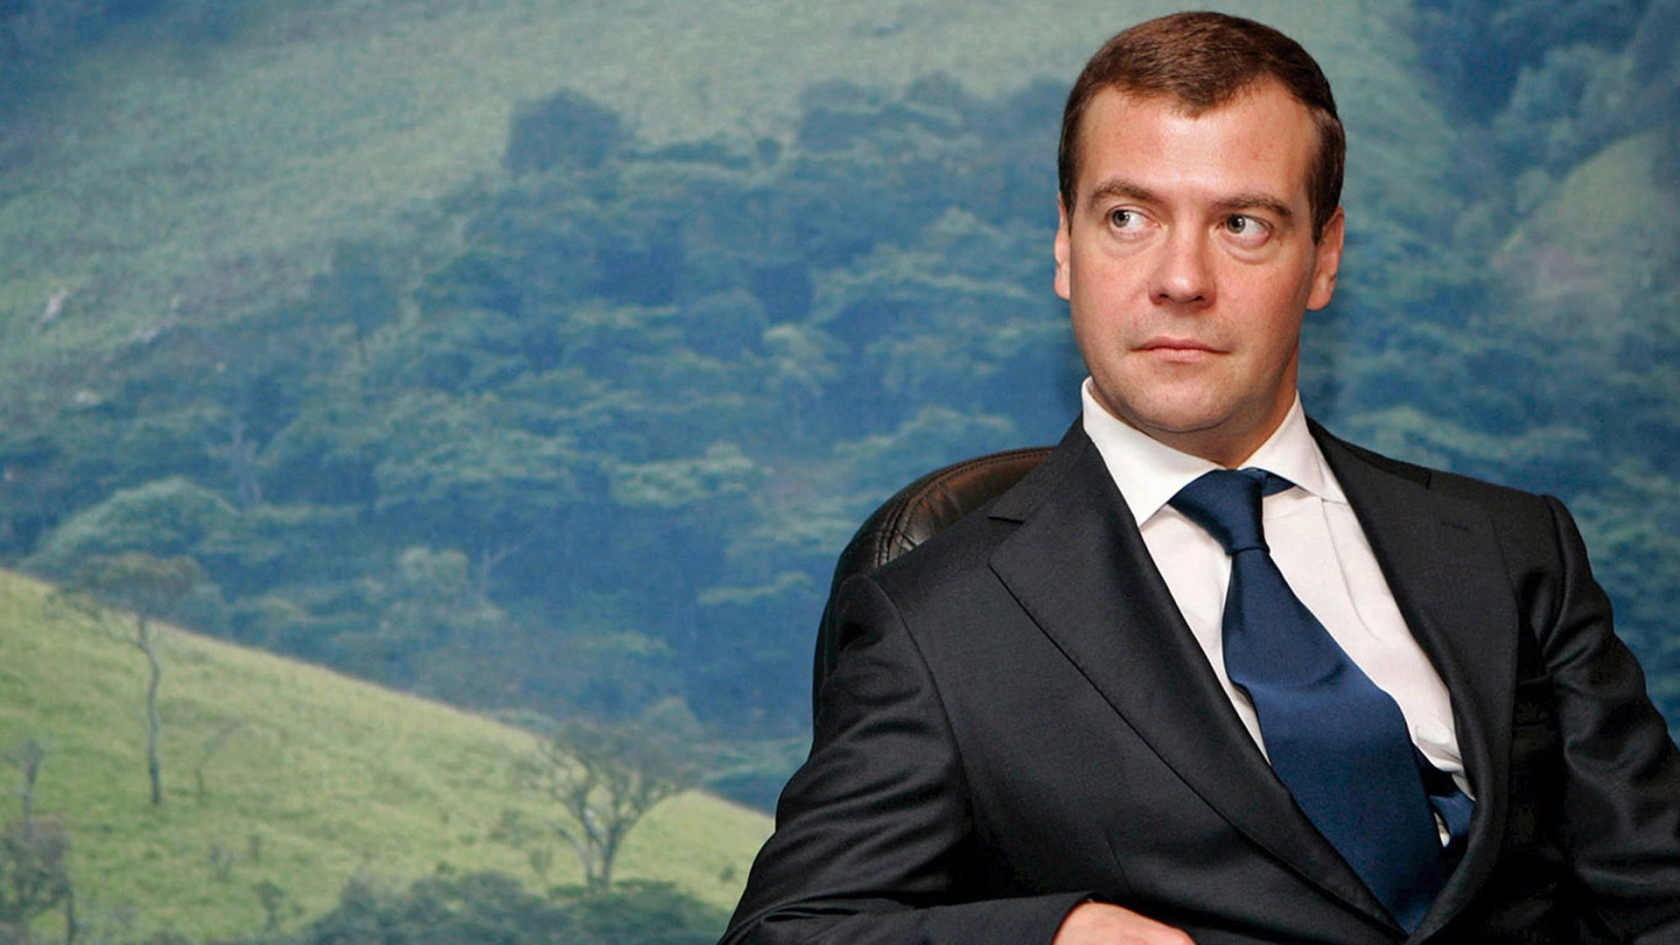 Dmitry Medvedev for 1680 x 945 HDTV resolution